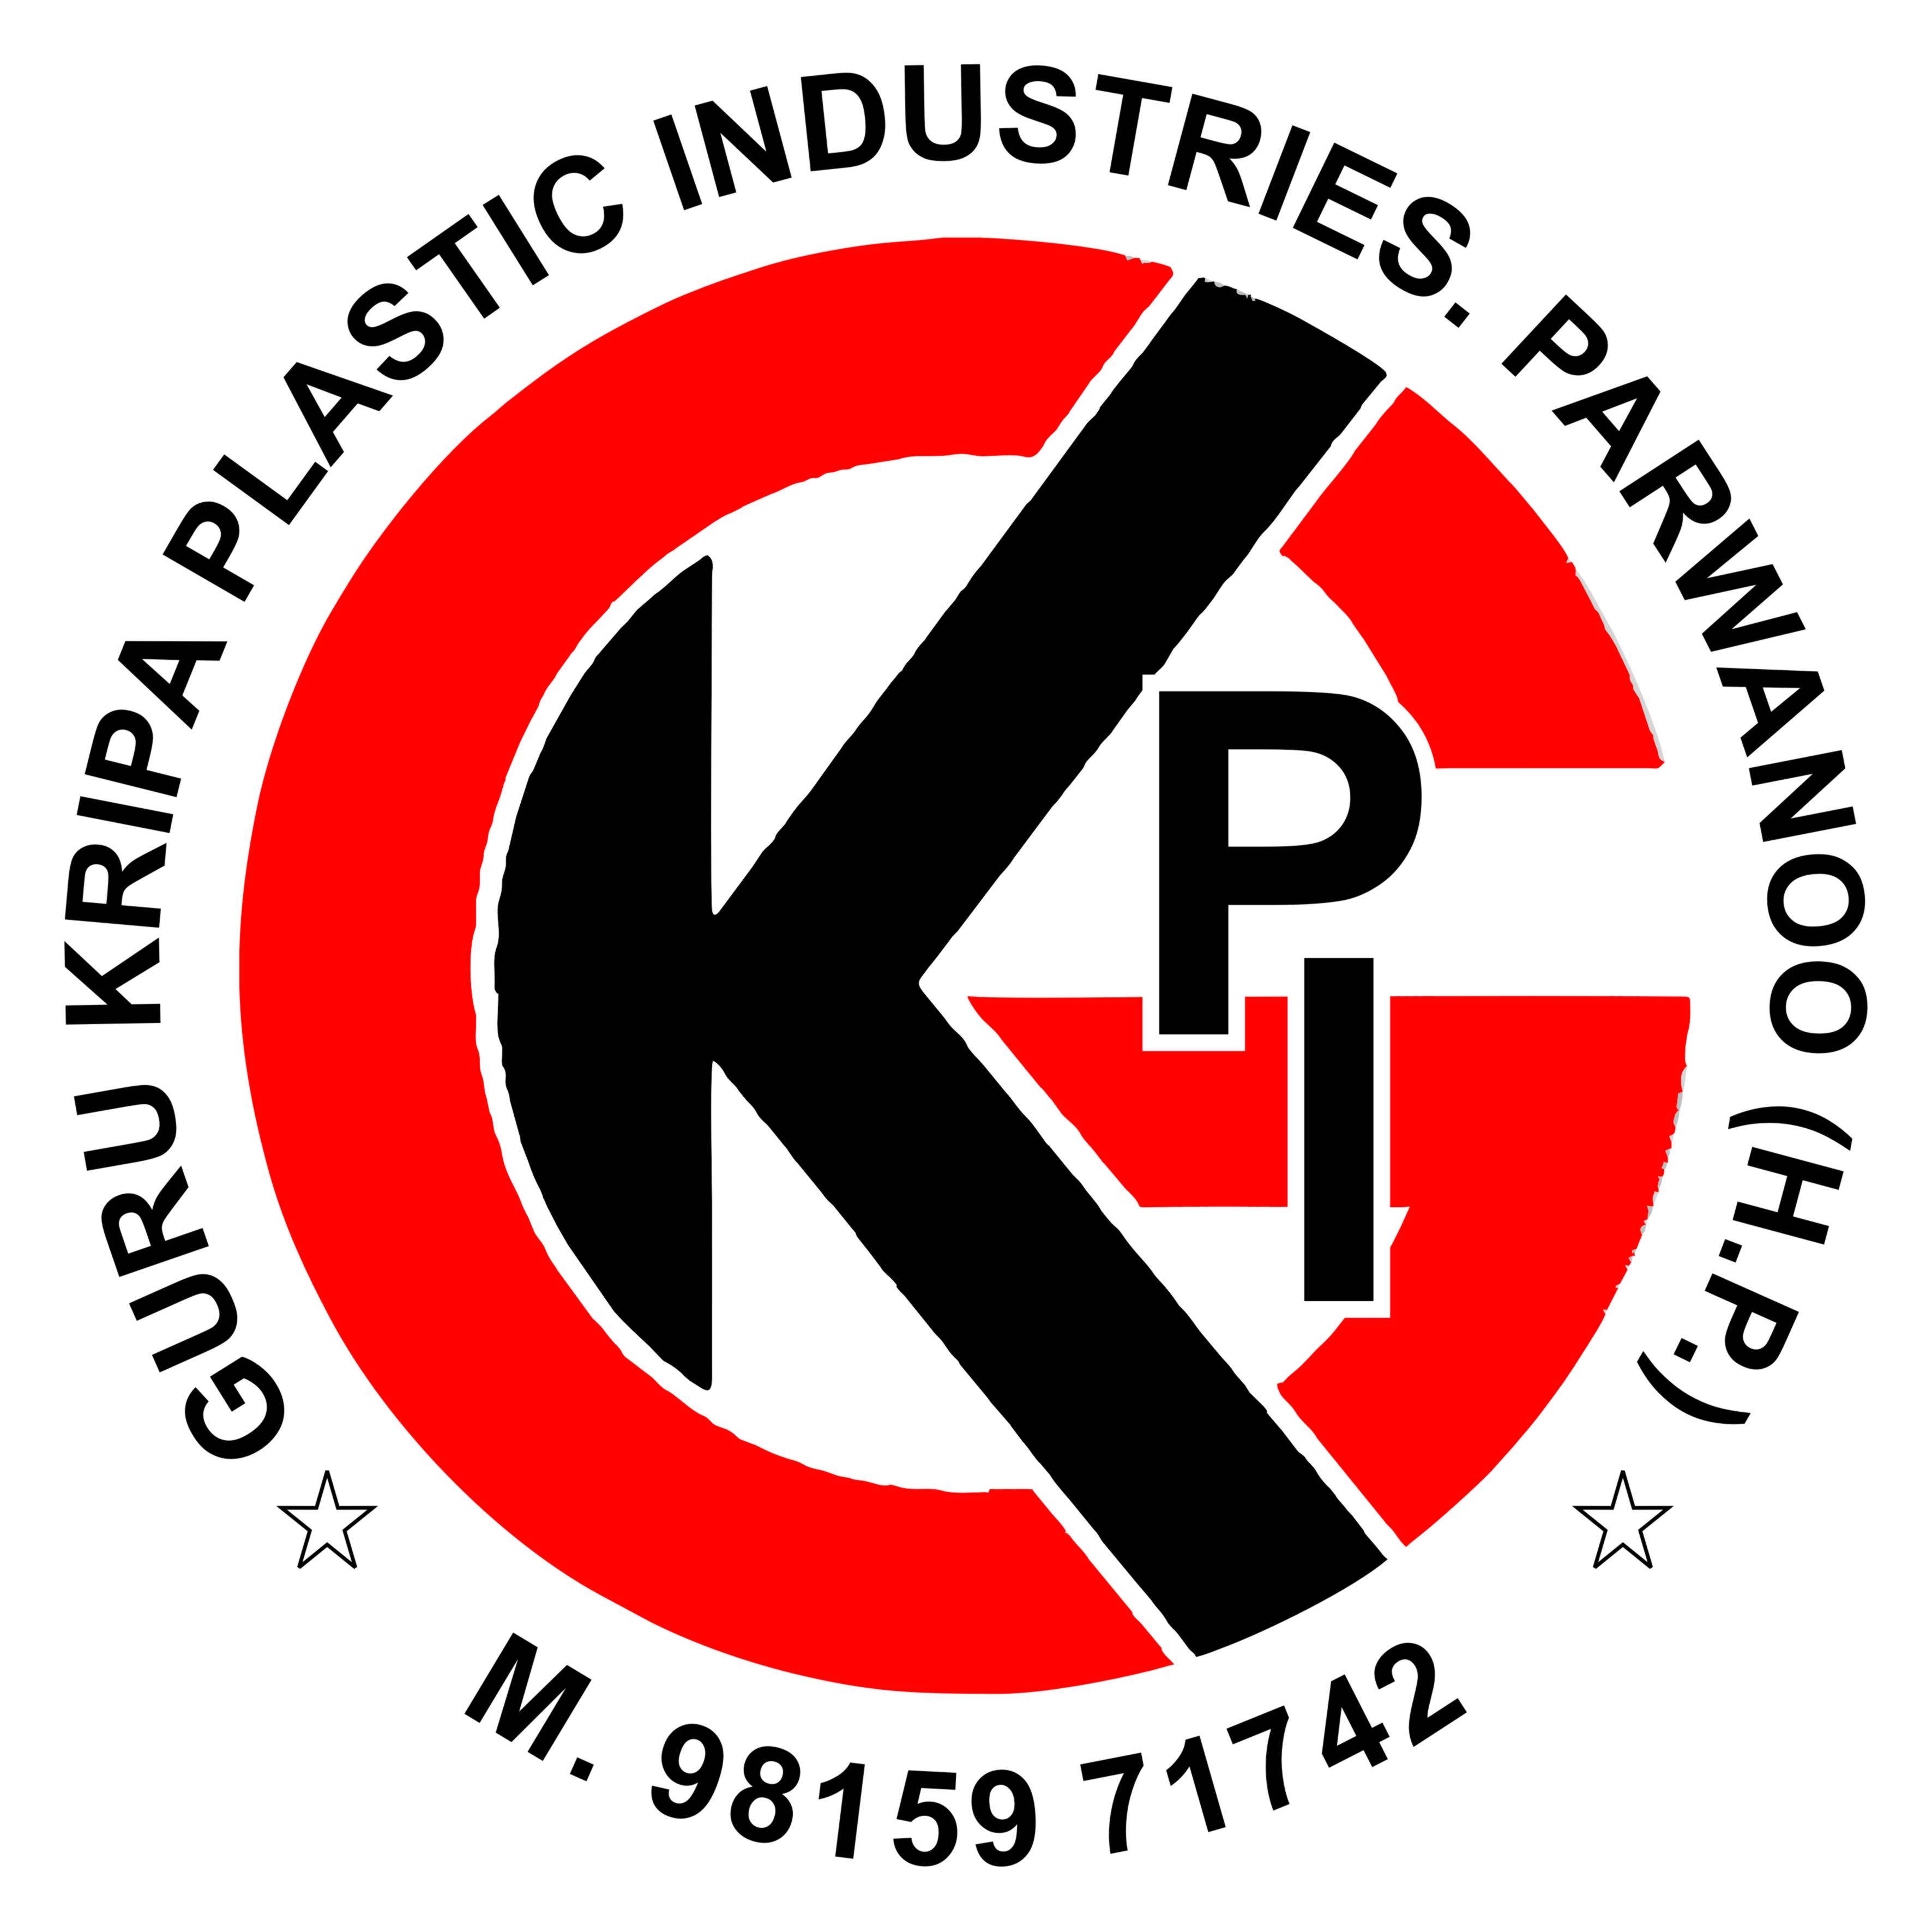 Gurukirpa Plastic Industries